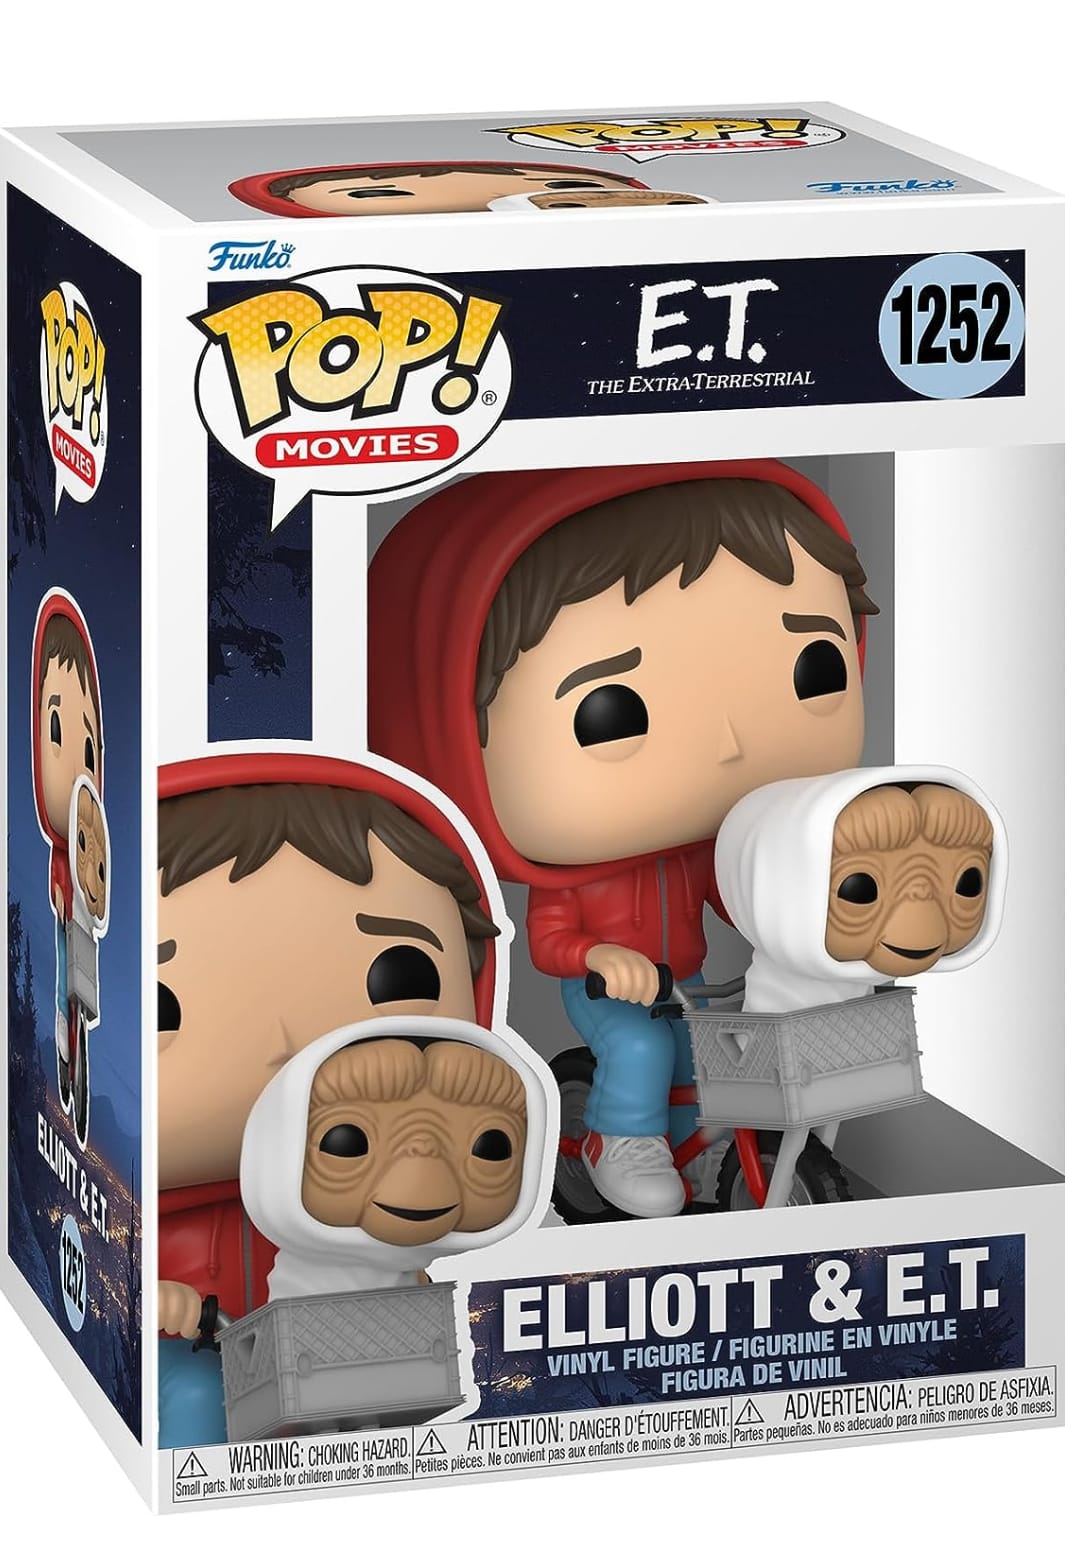 Funko Pop Elliott & E.T.